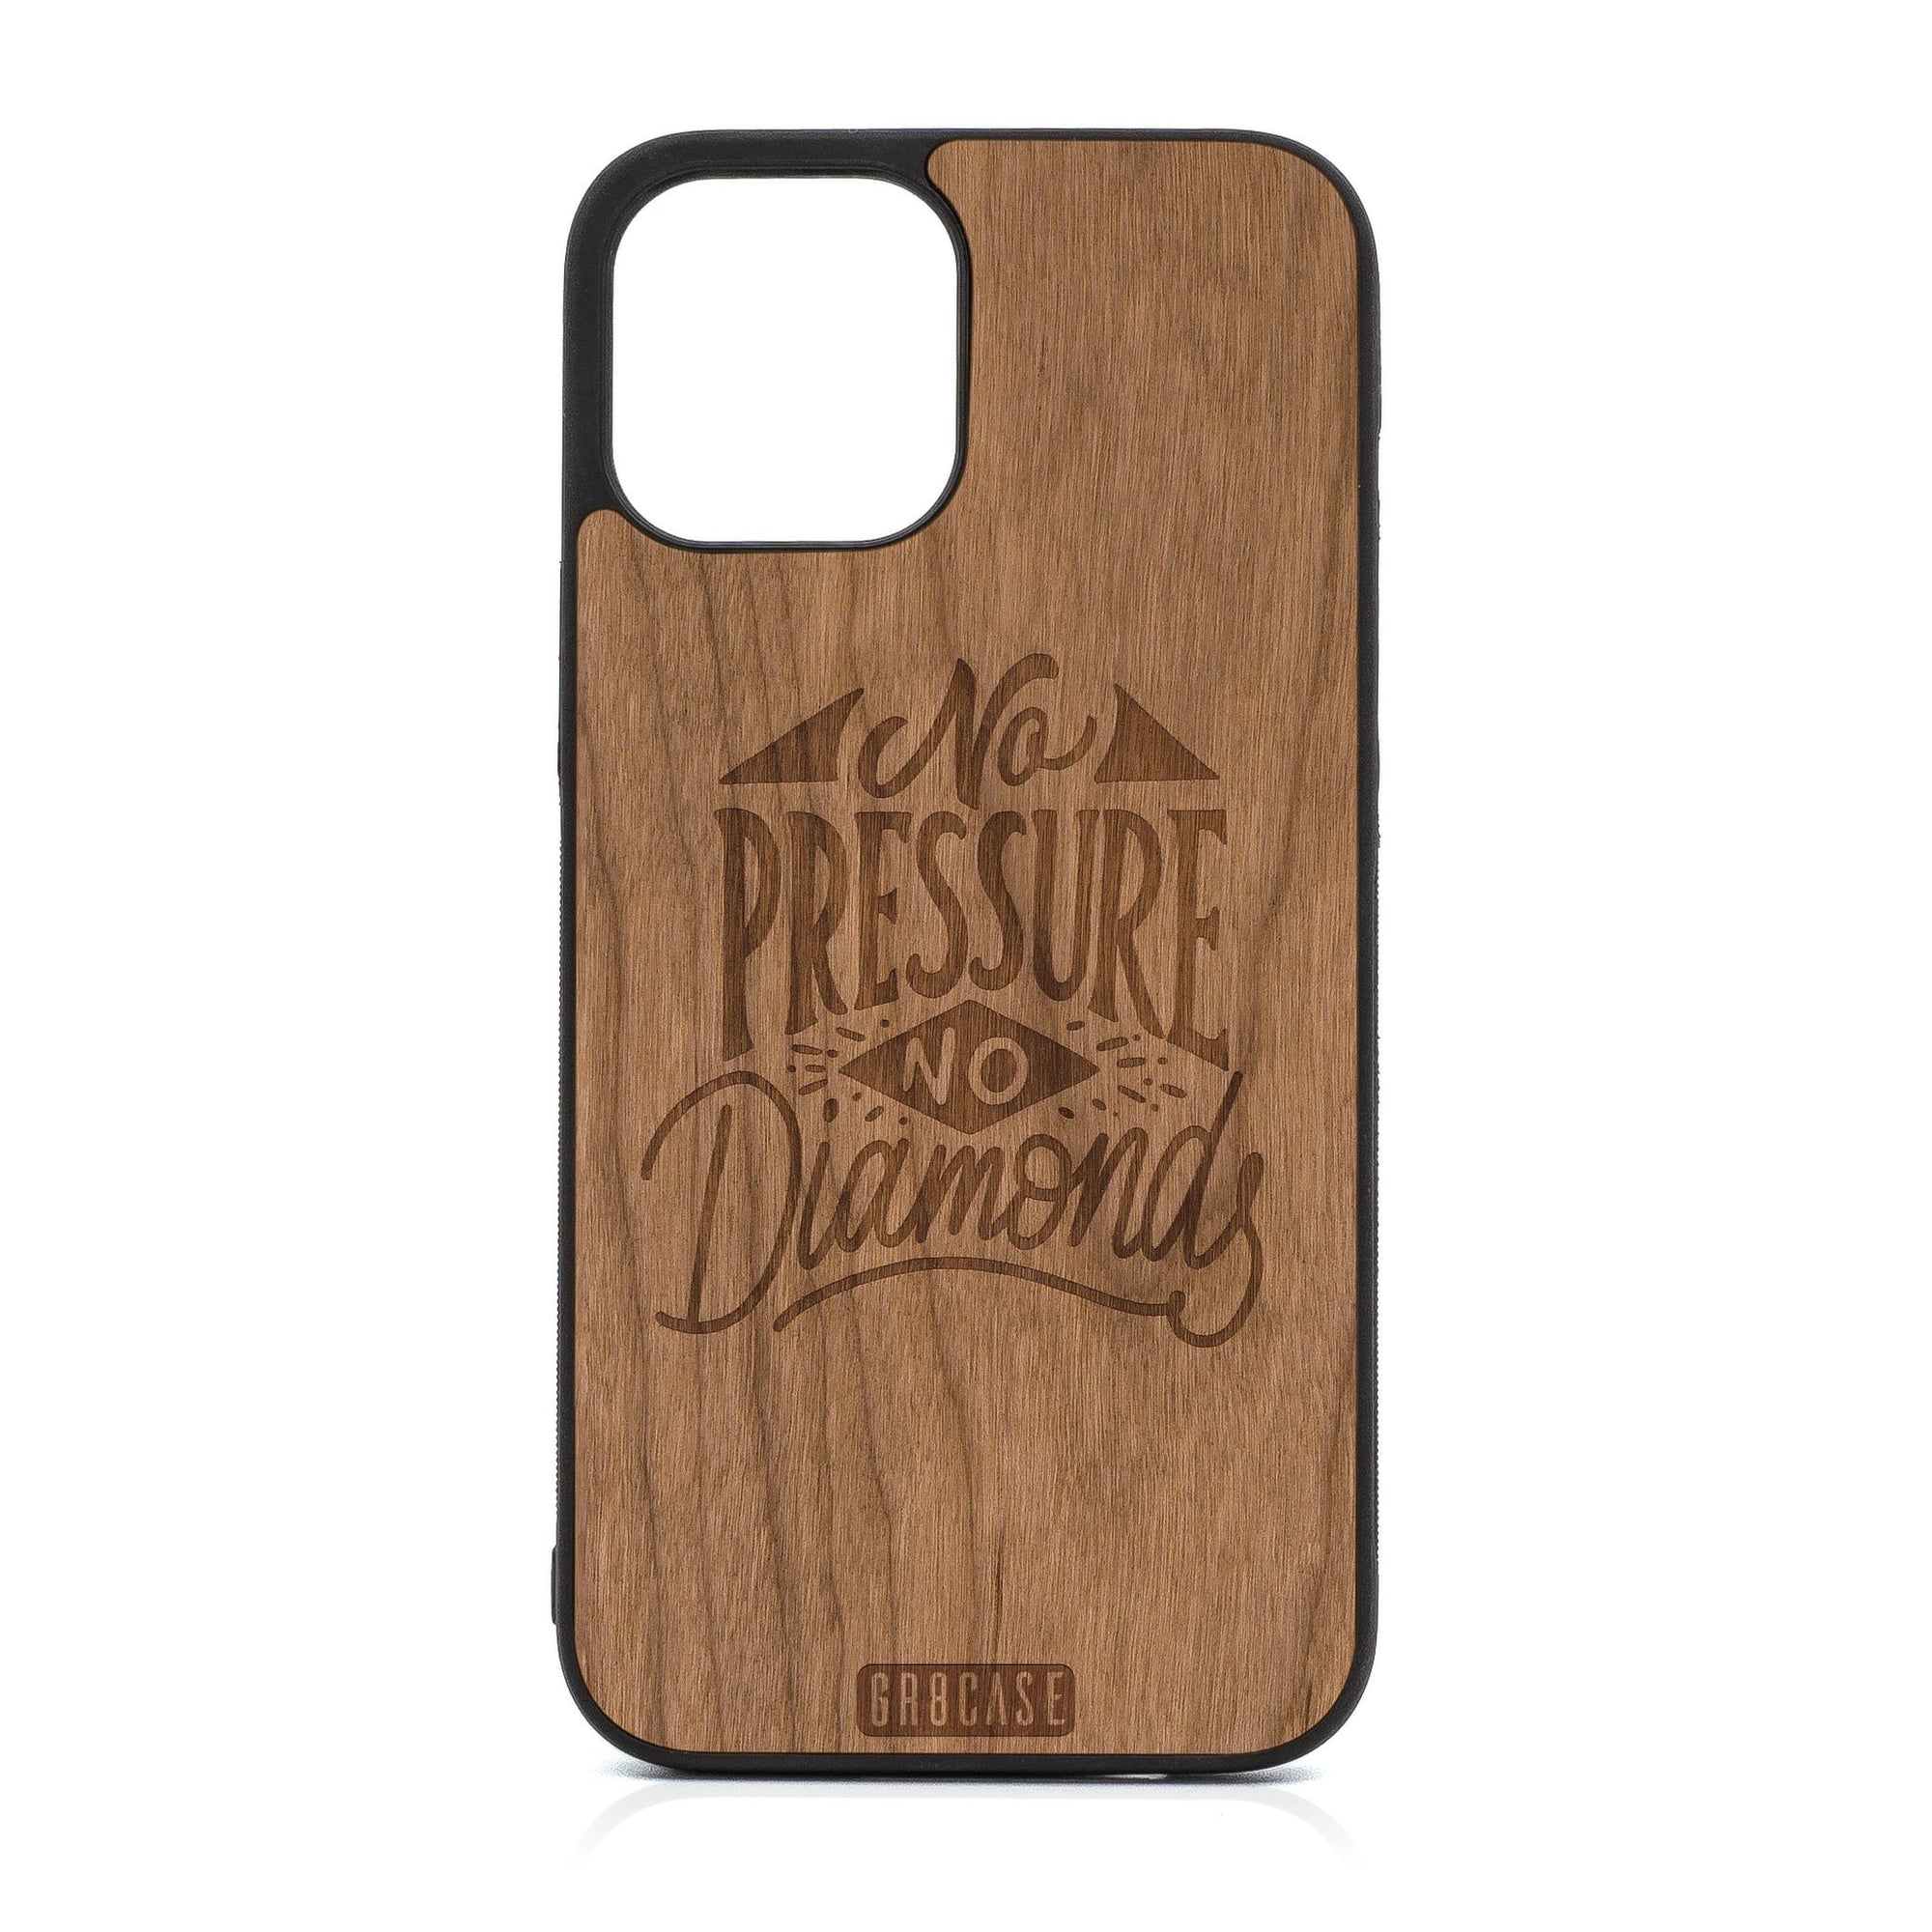 No Pressure No Diamonds Design Wood Case For iPhone 12 Pro Max